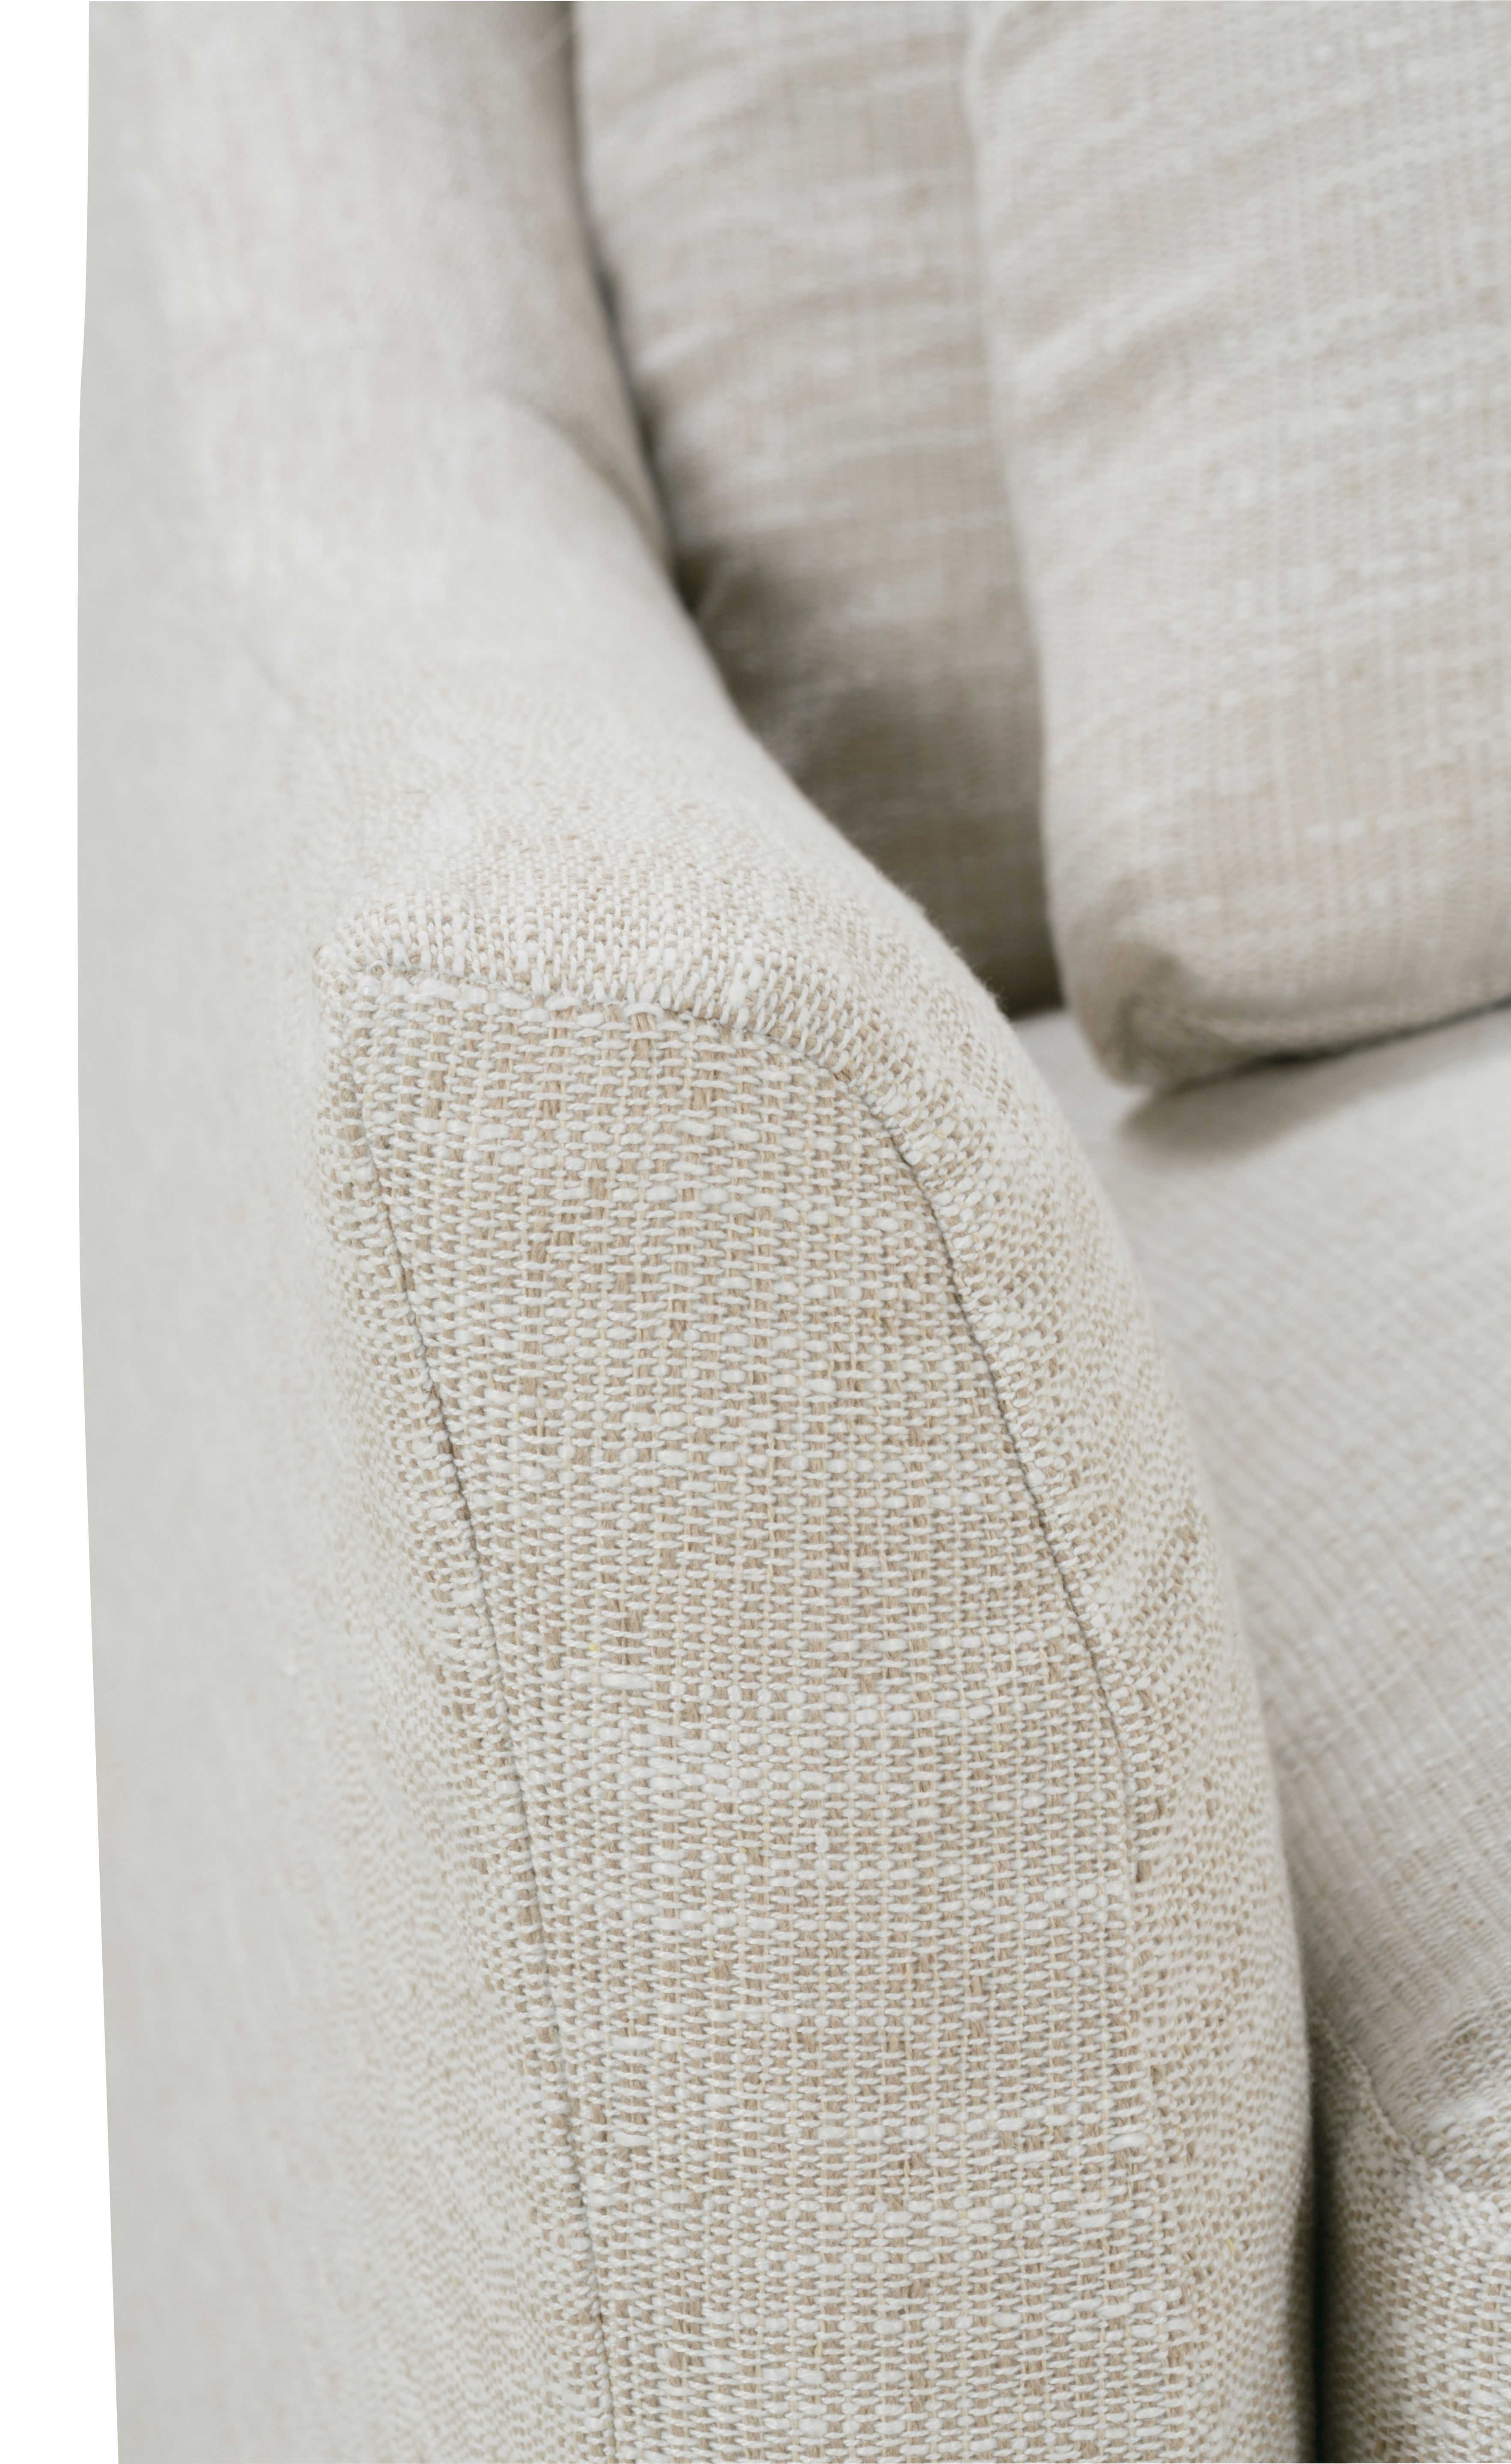 Fraser Slipcover Sofa, Bench Cushion, White, 95" - Image 3